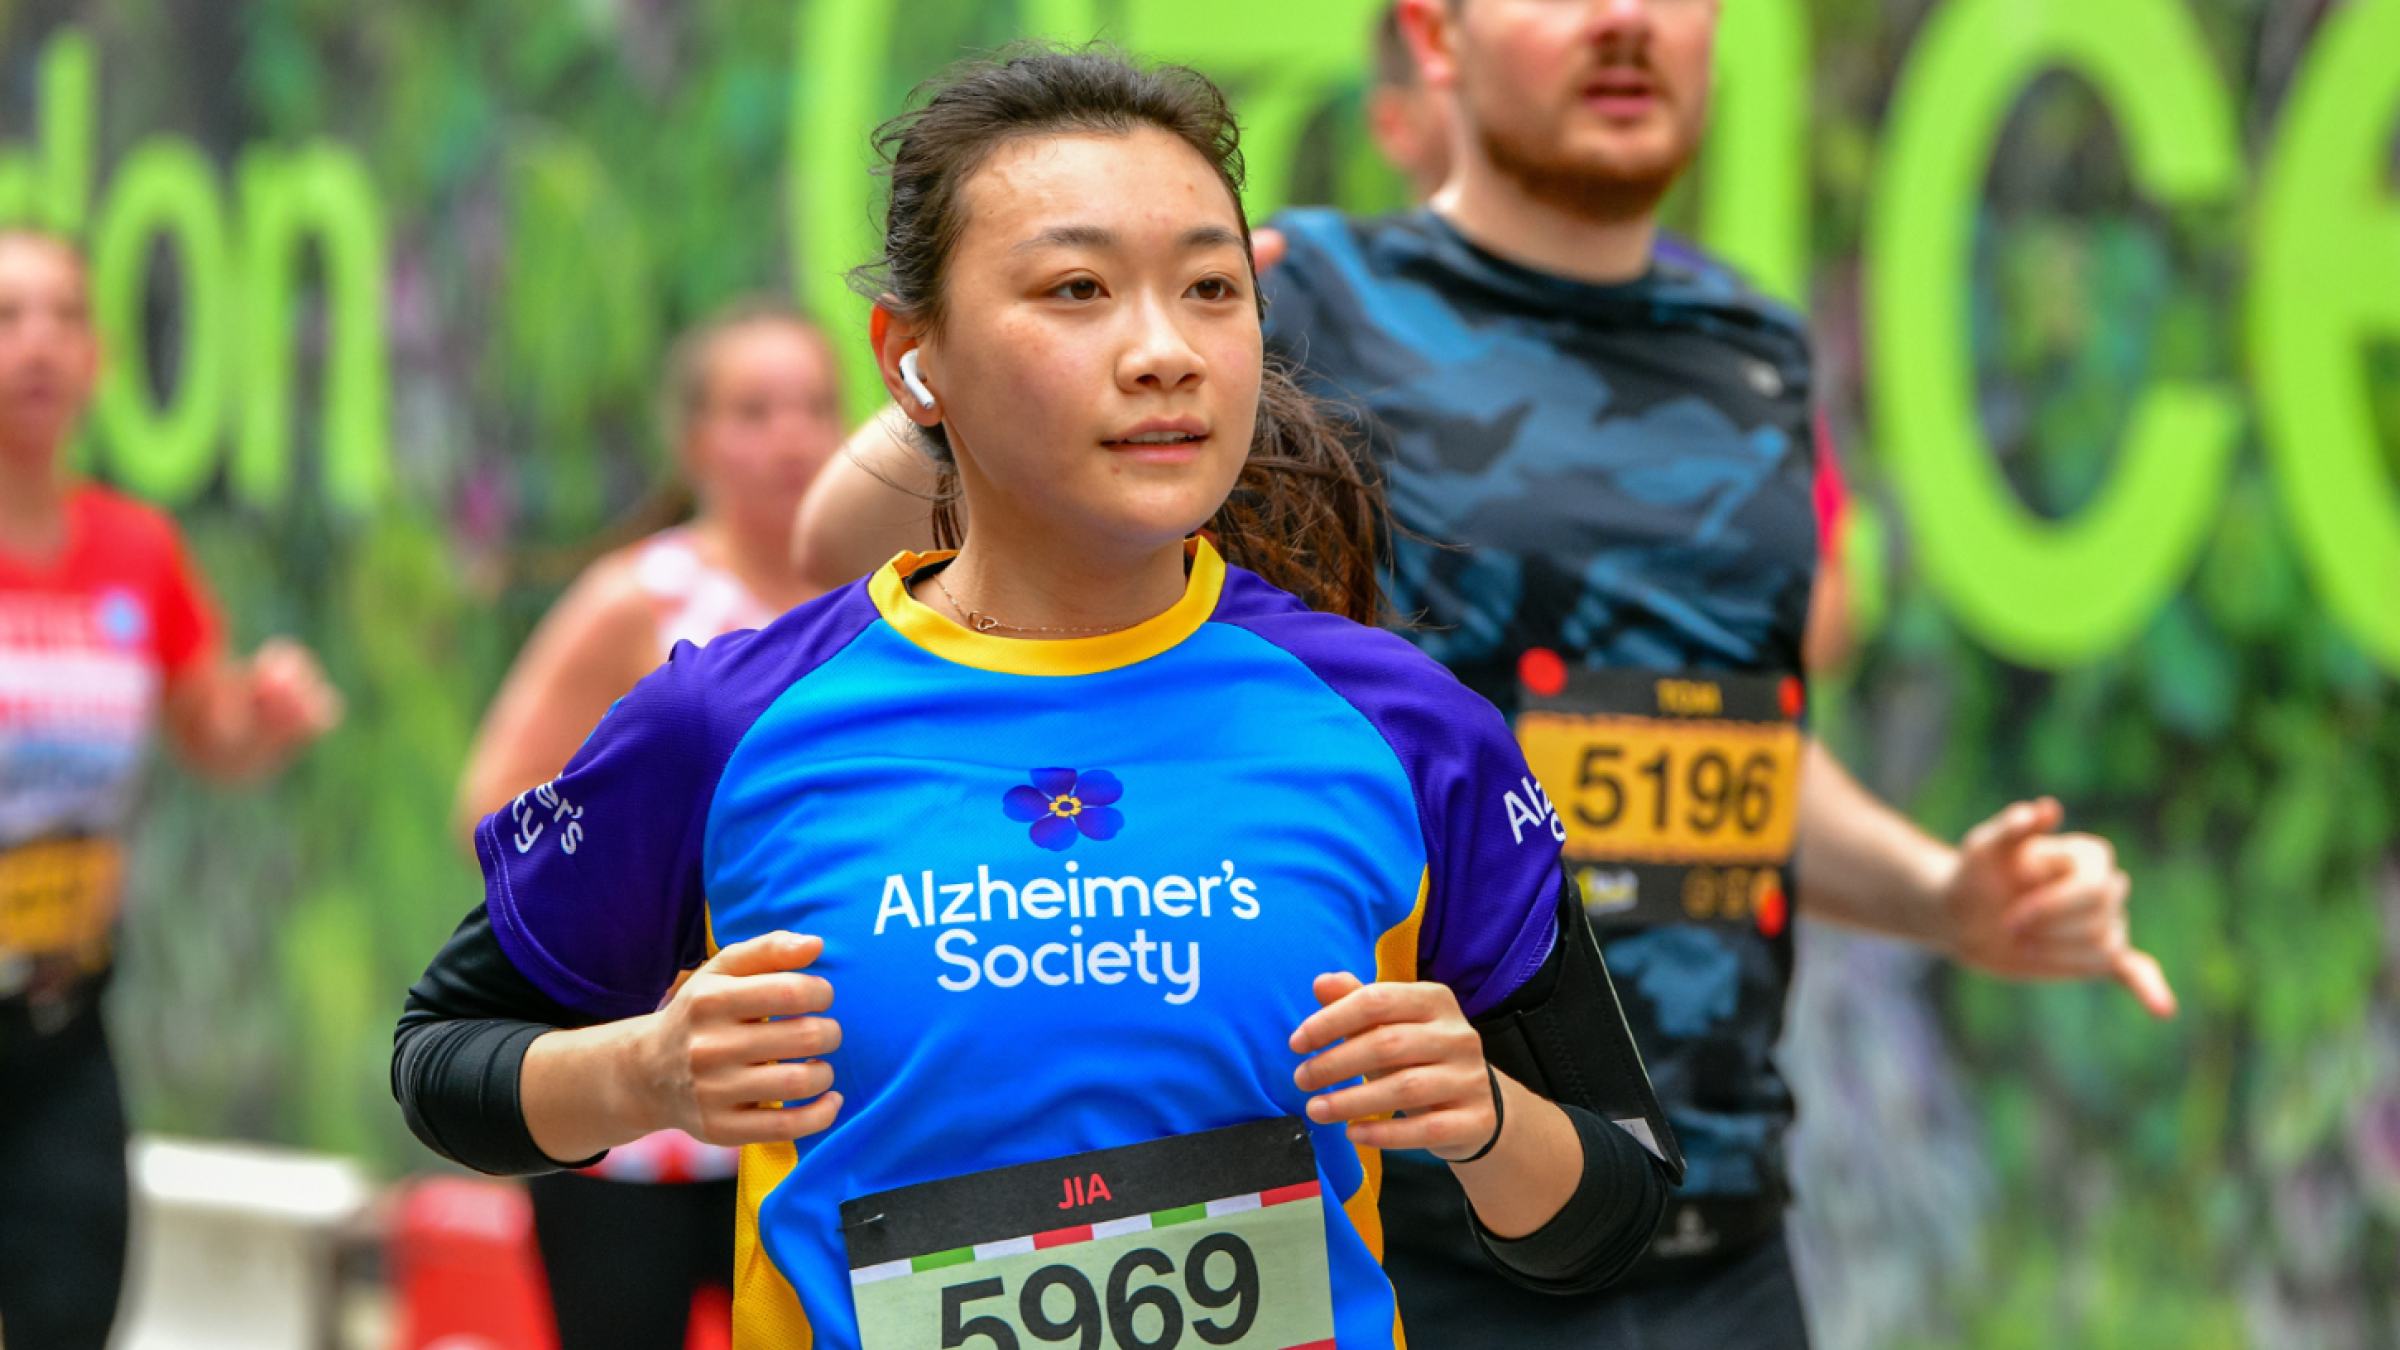 Alzheimer's Society runner passes a green backdrop